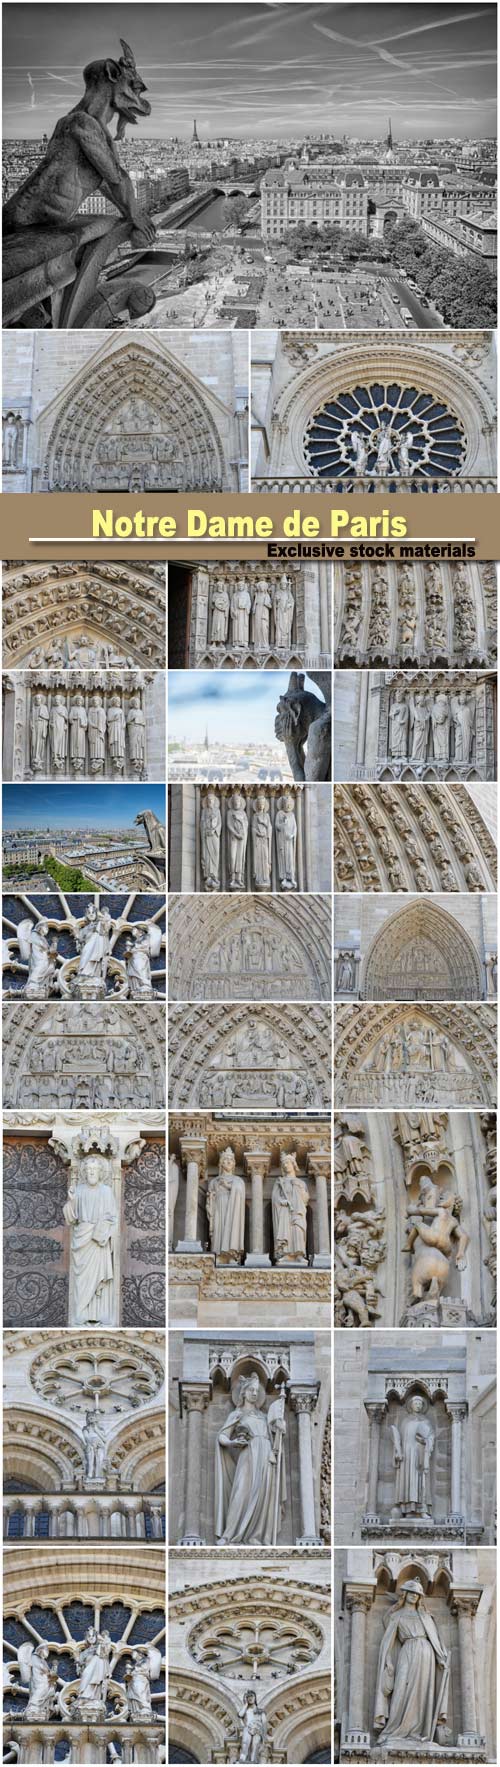 Notre Dame de Paris, facade statue detail